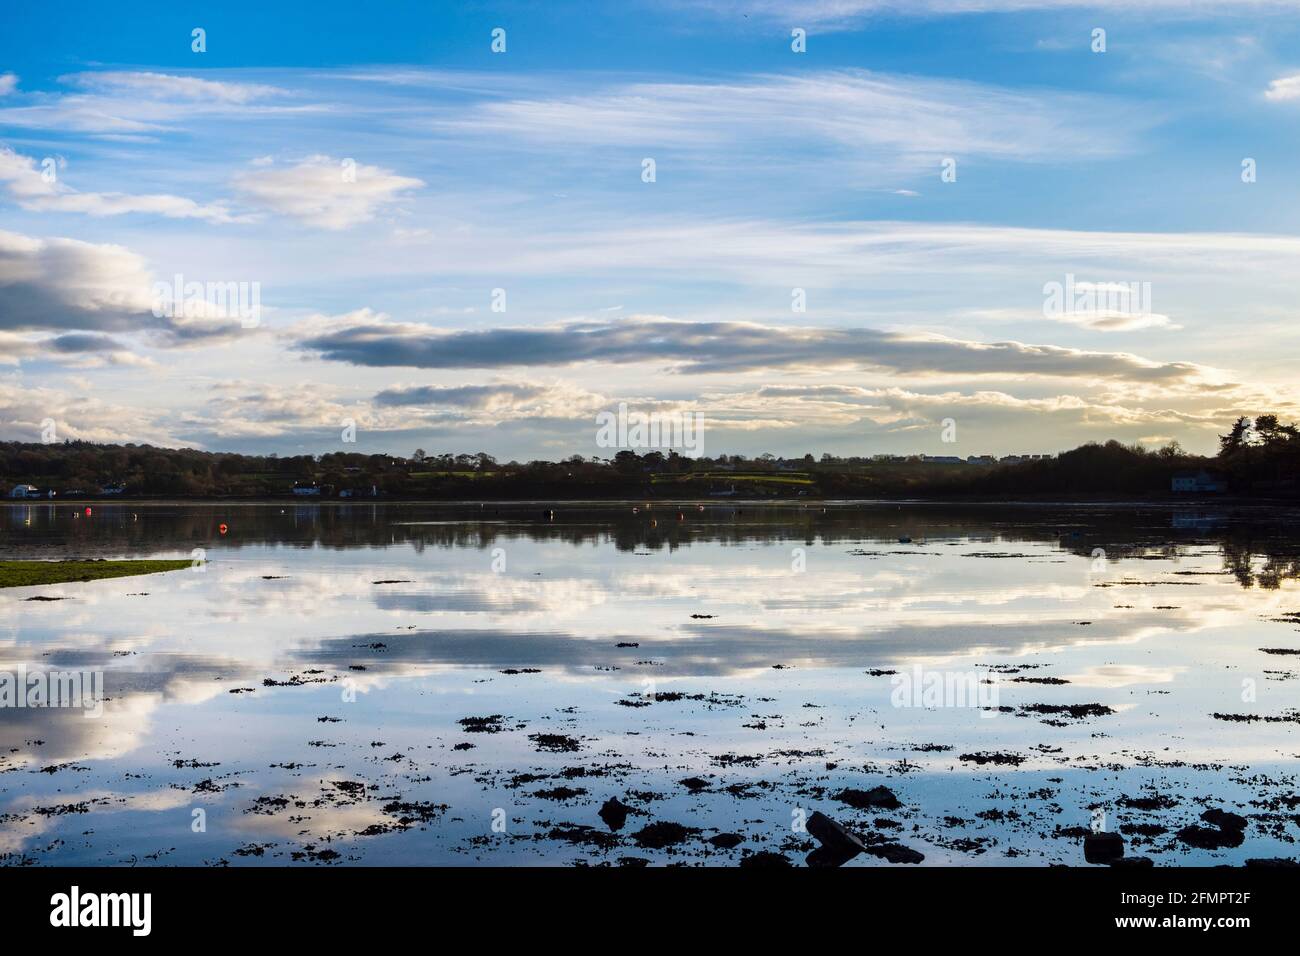 Ruhige Szenerie mit weißen Wolken und Himmel, die sich bei Flut in der Wintersonne im ruhigen Meer widerspiegeln. Red Wharf Bay, Isle of Anglesey, Wales, Großbritannien Stockfoto